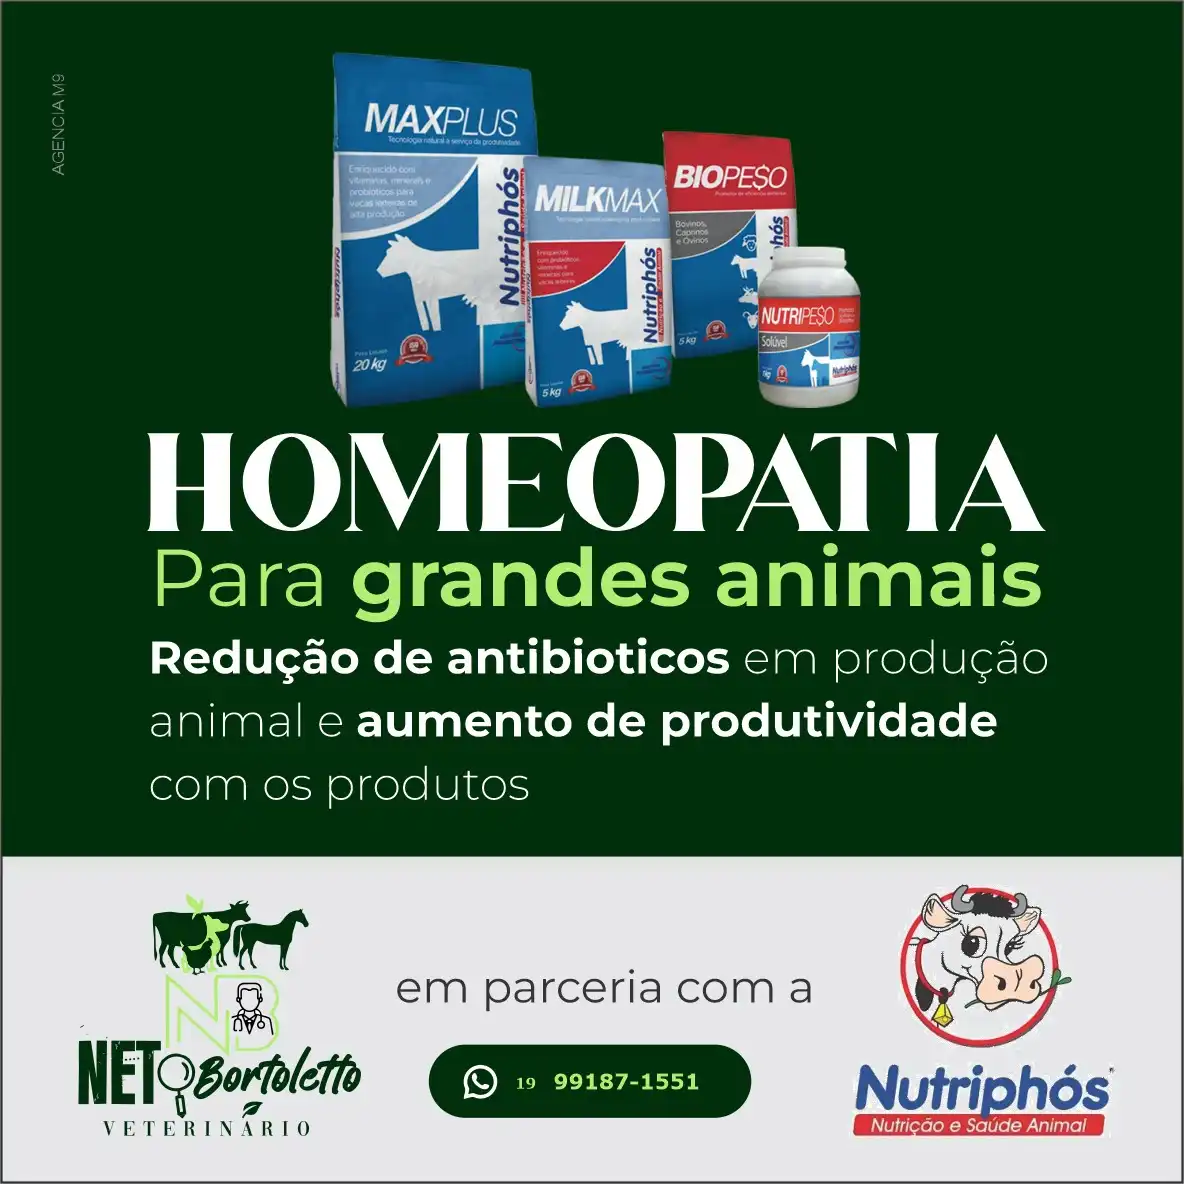 
Propaganda para Veterinário sobre Homeopatia para grandes animais



